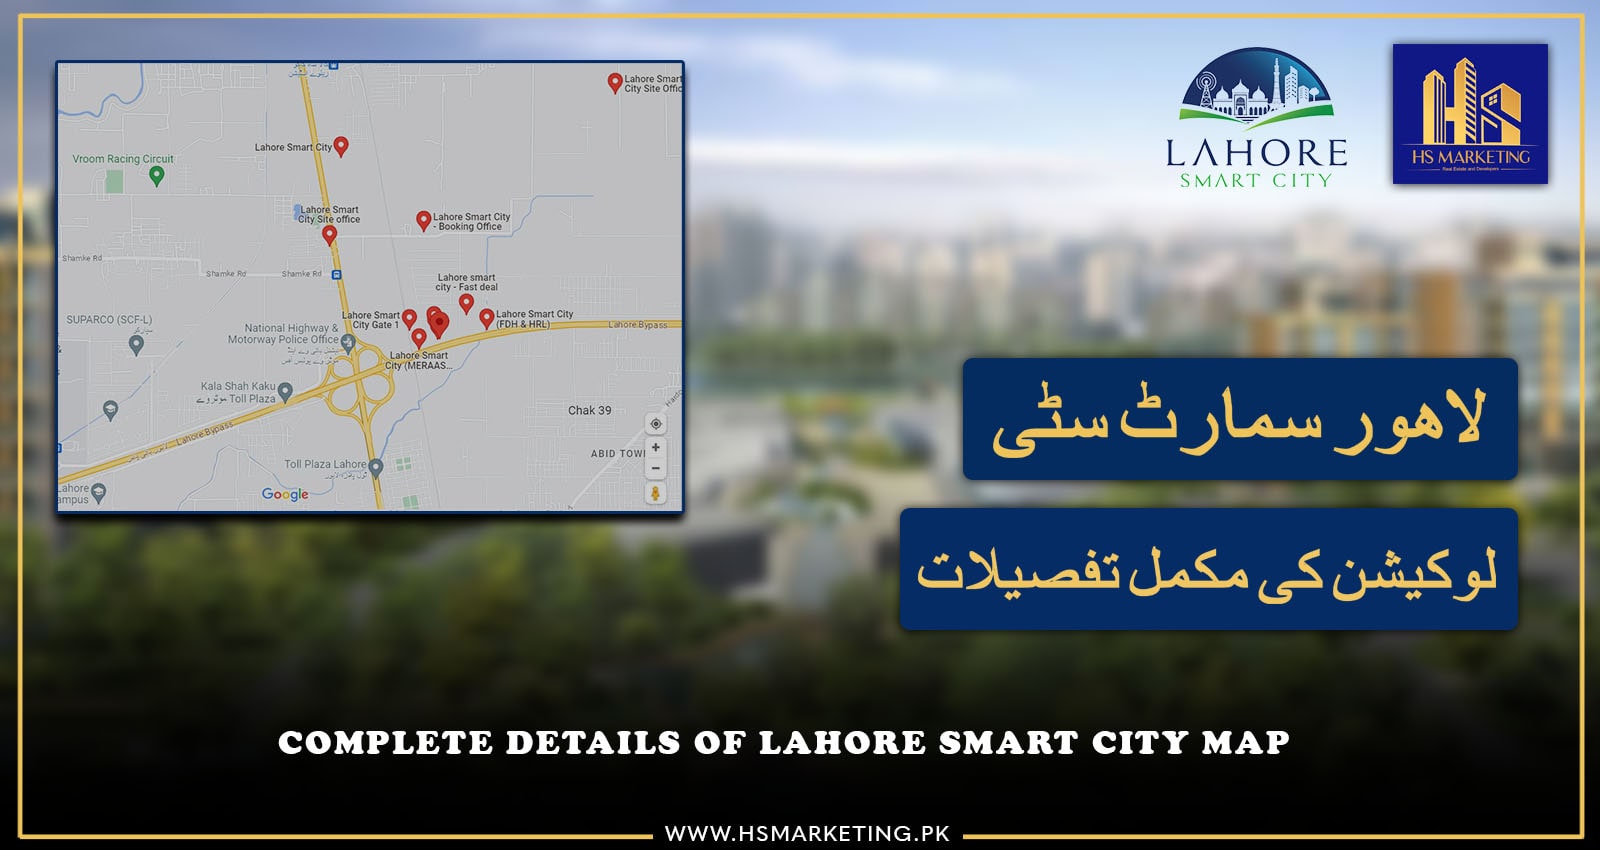 Lahore Smart City Map details